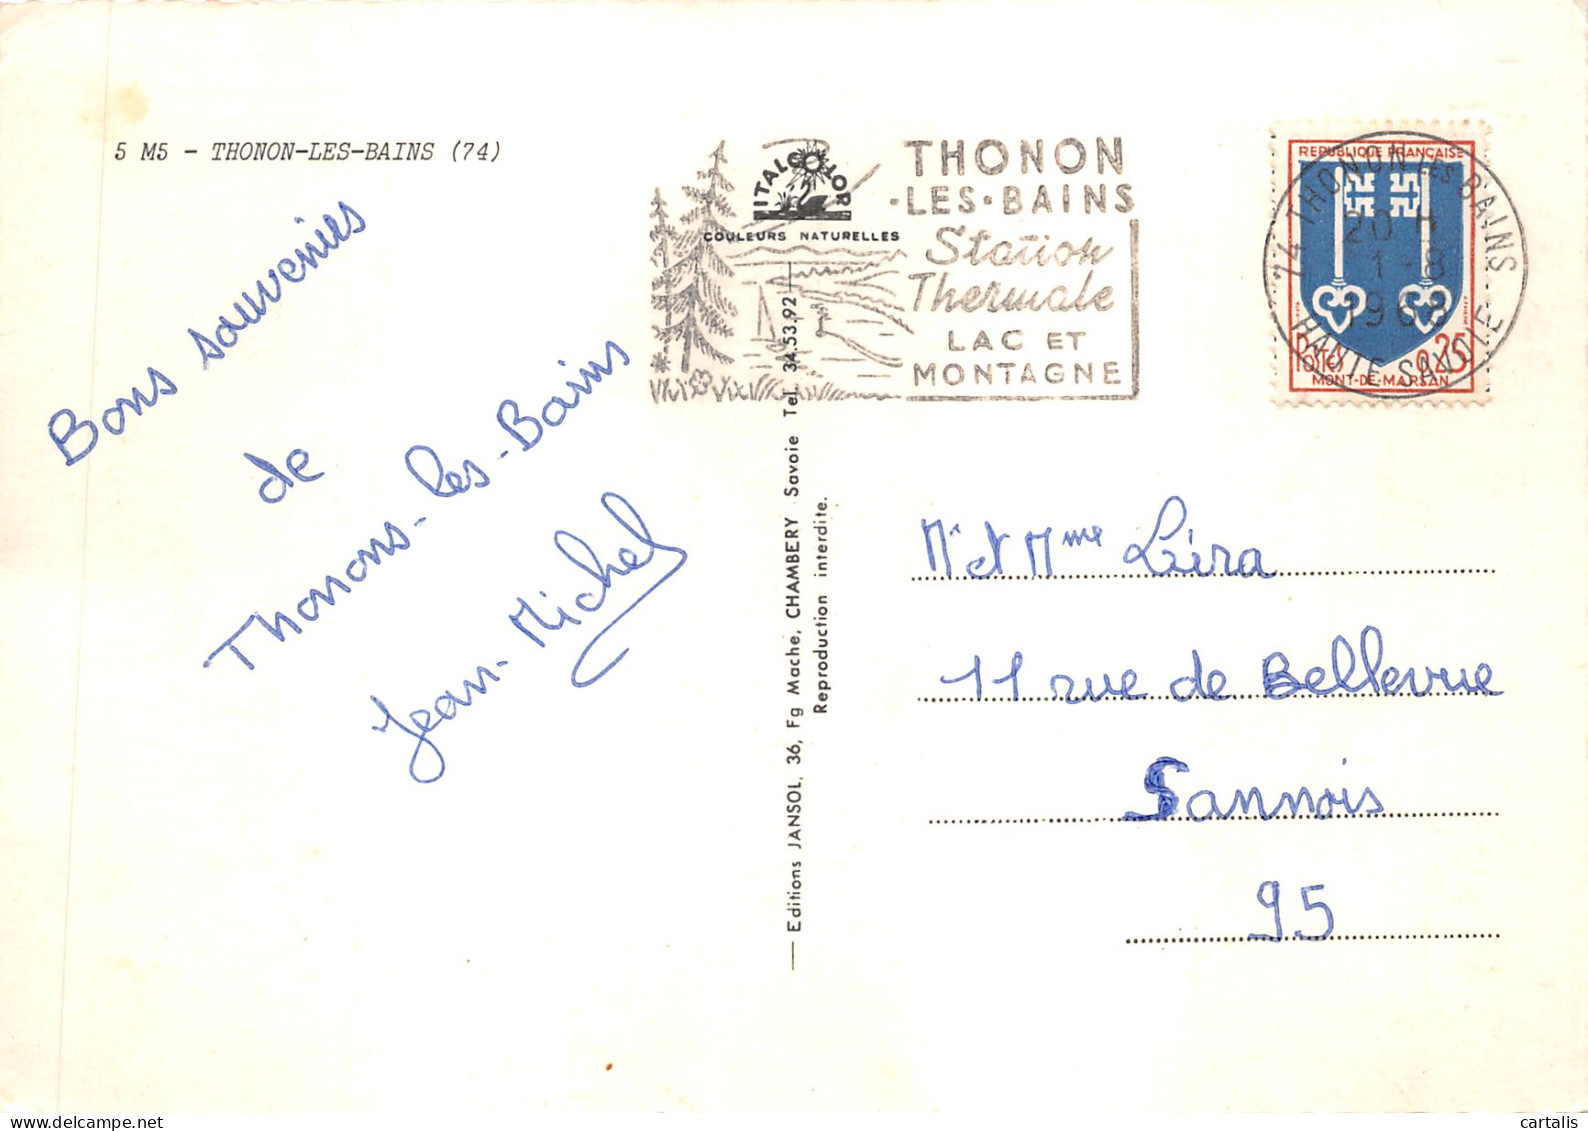 74-THONON LES BAINS-N 593-B/0179 - Thonon-les-Bains